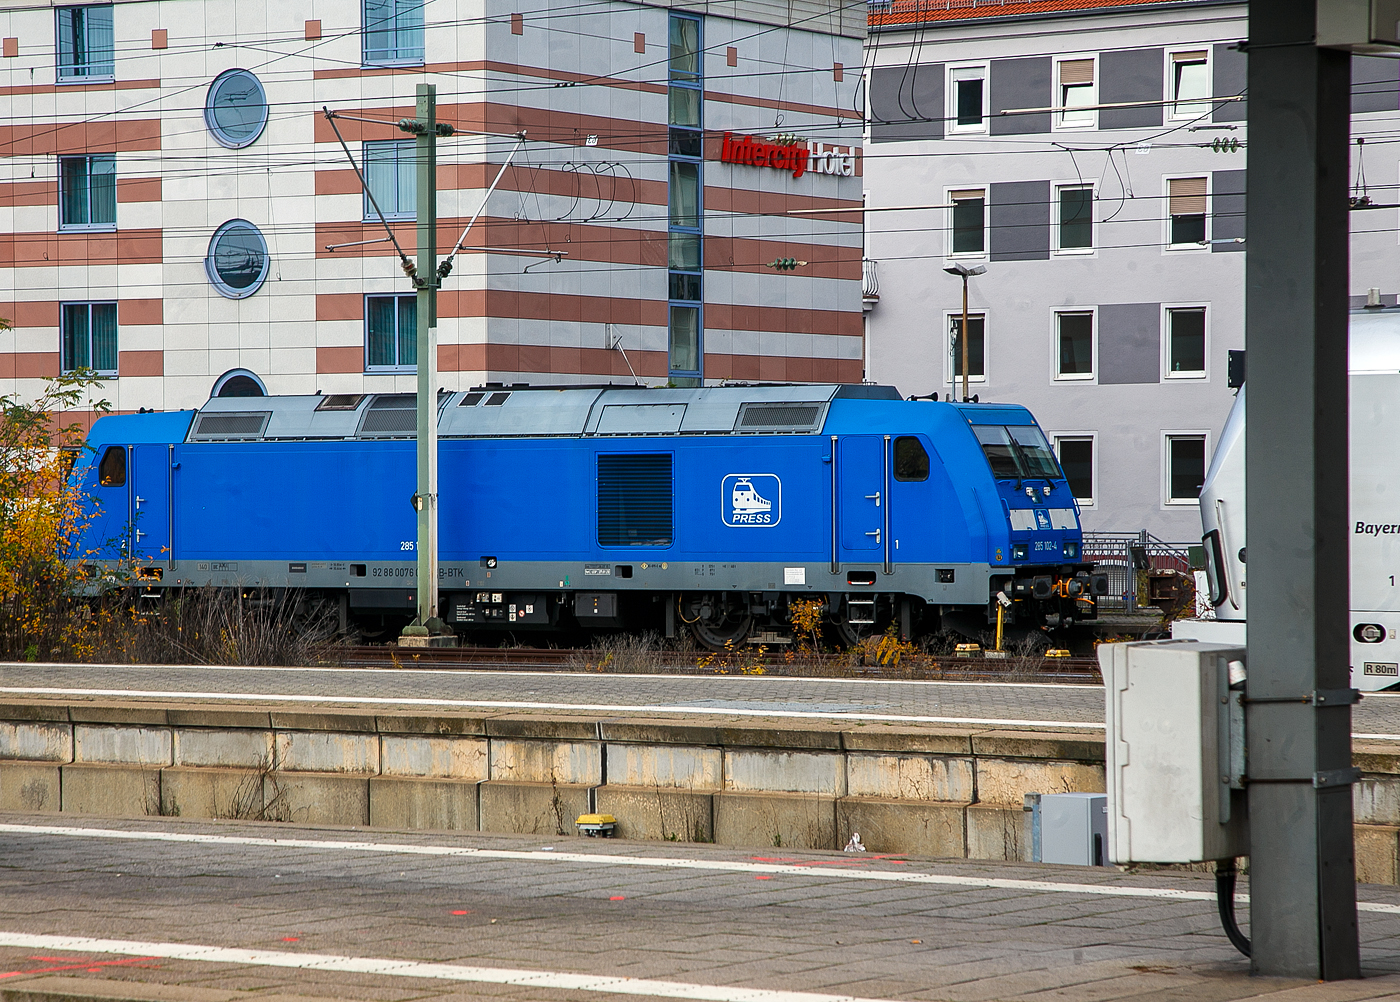 Die an die DB Fernverkehr AG, als ICE-Abschlepplok (mit aufgesetzter Scharfenberghilfskupplung) vermietete 285 102-4 alias 76 002 (92 88 0076 002-9 B-BTK), eine Bombardier TRAXX F140 DE der PRESS - Eisenbahn-Bau- and Betriebsgesellschaft Pressnitztalbahn mbH (Jöhstadt), ist am 22.11.2022 beim Hauptbahnhof Nürnberg abgestellt. 

Eingestellt ist die Lok durch die BTK - Bombardier Transportation GmbH (Kassel) in Belgien, als 076 002. Die TRAXX F140 DE wurde 2009 von der Bombardier Transportation GmbH in Kassel unter der Fabriknummer 34492, eigentlich war sie für die Fret SNCF als BB 076 002 (92 87 0076 002-0 F-SNCF), wurde dann aber für AKIEM als 76 002 (92 88 0076 002-9 B-AKIEM) in Belgien zugelassen, aber wie weitere TRAXX F140 DE, wurde sie vom Besteller nie abgenommen. So ging sie 2013 an die BTK - Bombardier Transportation GmbH in Kassel  als 76 002 (92 88 0076 002-9 B-BTK) eingestellt in Belgien und ist zugelassen in Belgien, der Niederlande und Deutschland. Nach der Nachrüstung ETCS wurde sie wie weitere 3 Lok (76 001–004) im September 2015 an die Pressnitztalbahn (PRESS) verkauft. Diese werden teilweise, als Schlepplokomotive für schadhafte ICE Triebzüge eingesetzt. Zum Kuppeln mit Triebzügen führen sie auf die Zughaken aufsetzbare Scharfenberghilfskupplungen mit, welche man hier im Bild auch erkennen kann. 

Diese eigentlich für die Fret SNCF / AKIEM vorgesehenen Loks haben eine um 200 kW höhere Leistung von 2.400 kW.